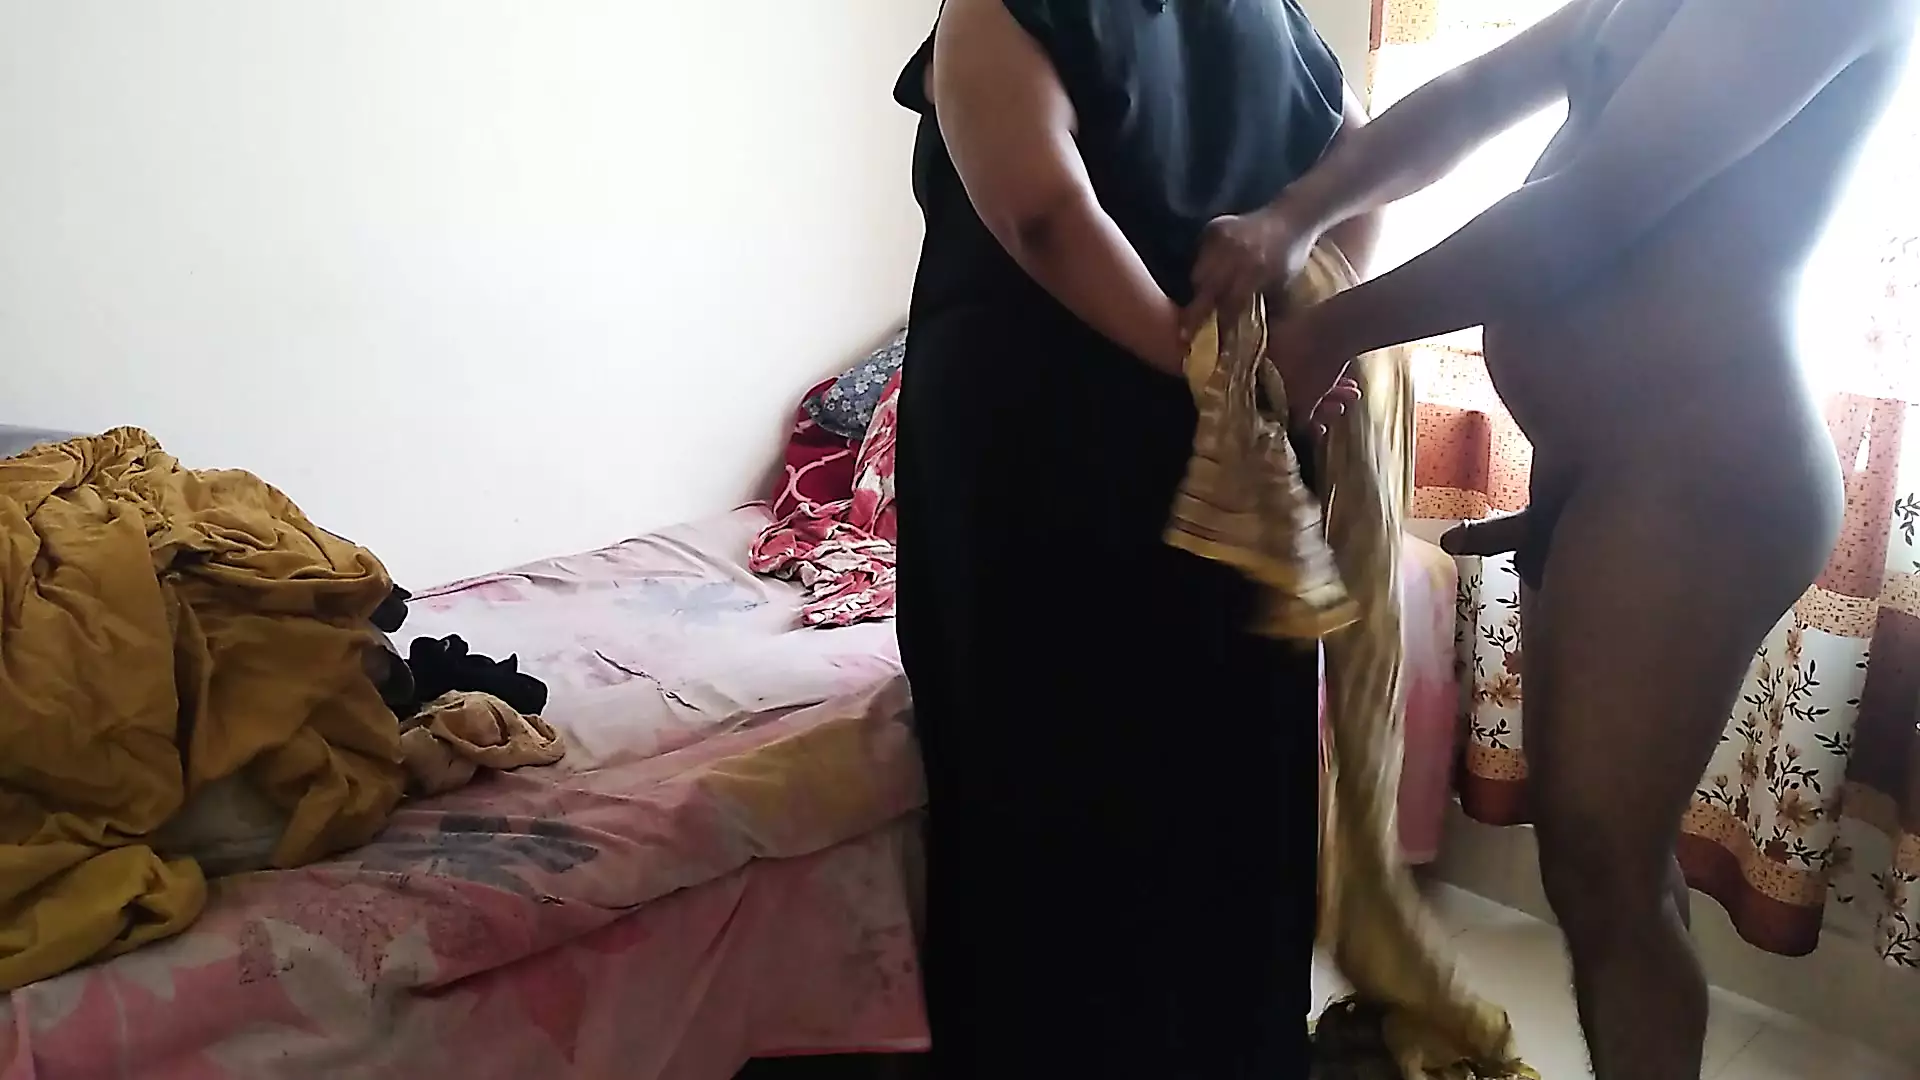 Indonesische weduwe 55-jarige moslima tante bond haar handen vast en neukte haar natte poesje-Jabardasti neukpartij and geeft wat achter xHamster